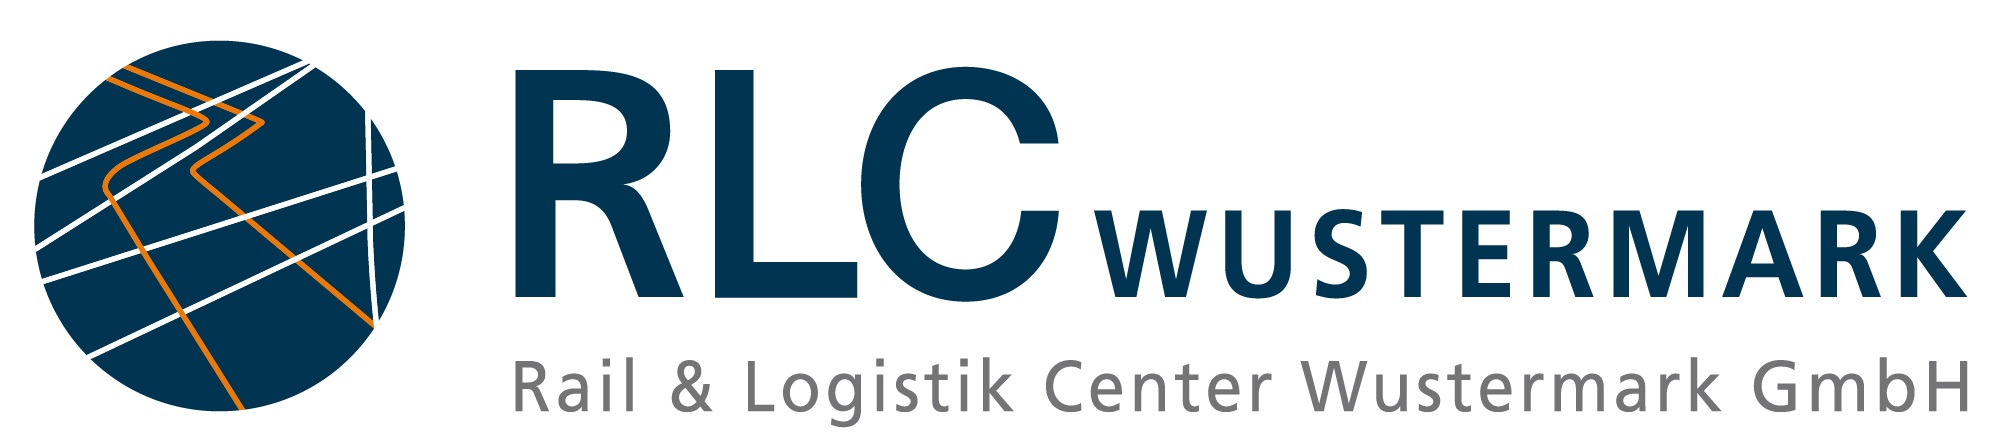 Logo RLCW GmbH